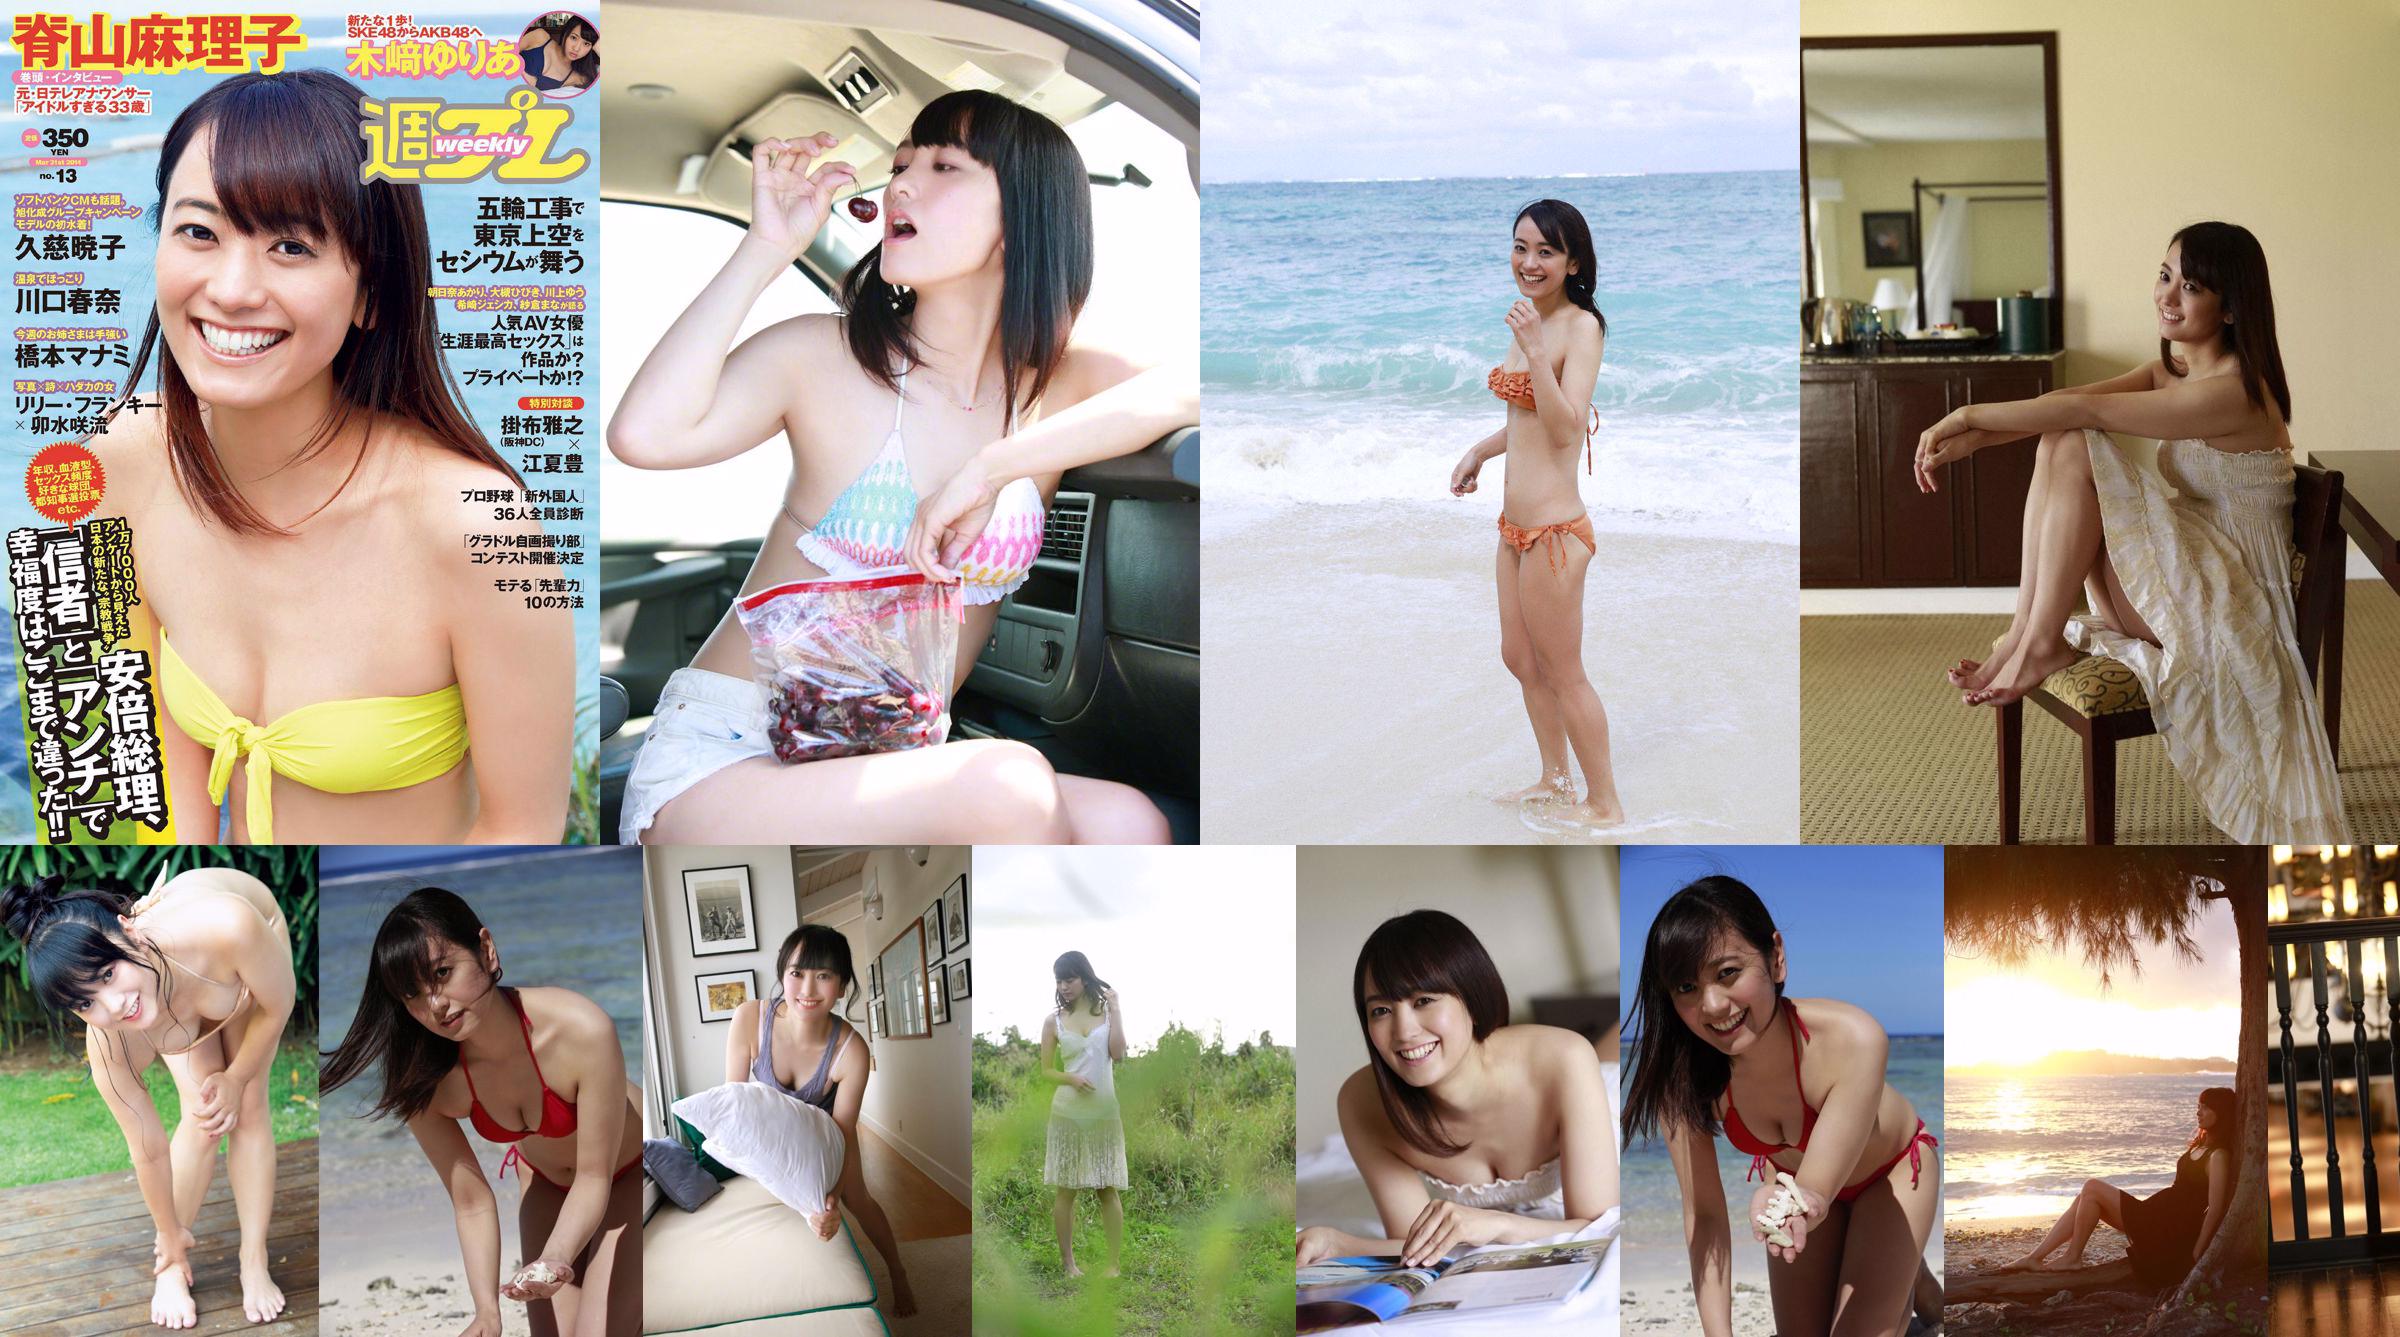 [JUMAT] Mariko Seyama "Joshiana mencari foto Eros" No.216784 Halaman 1